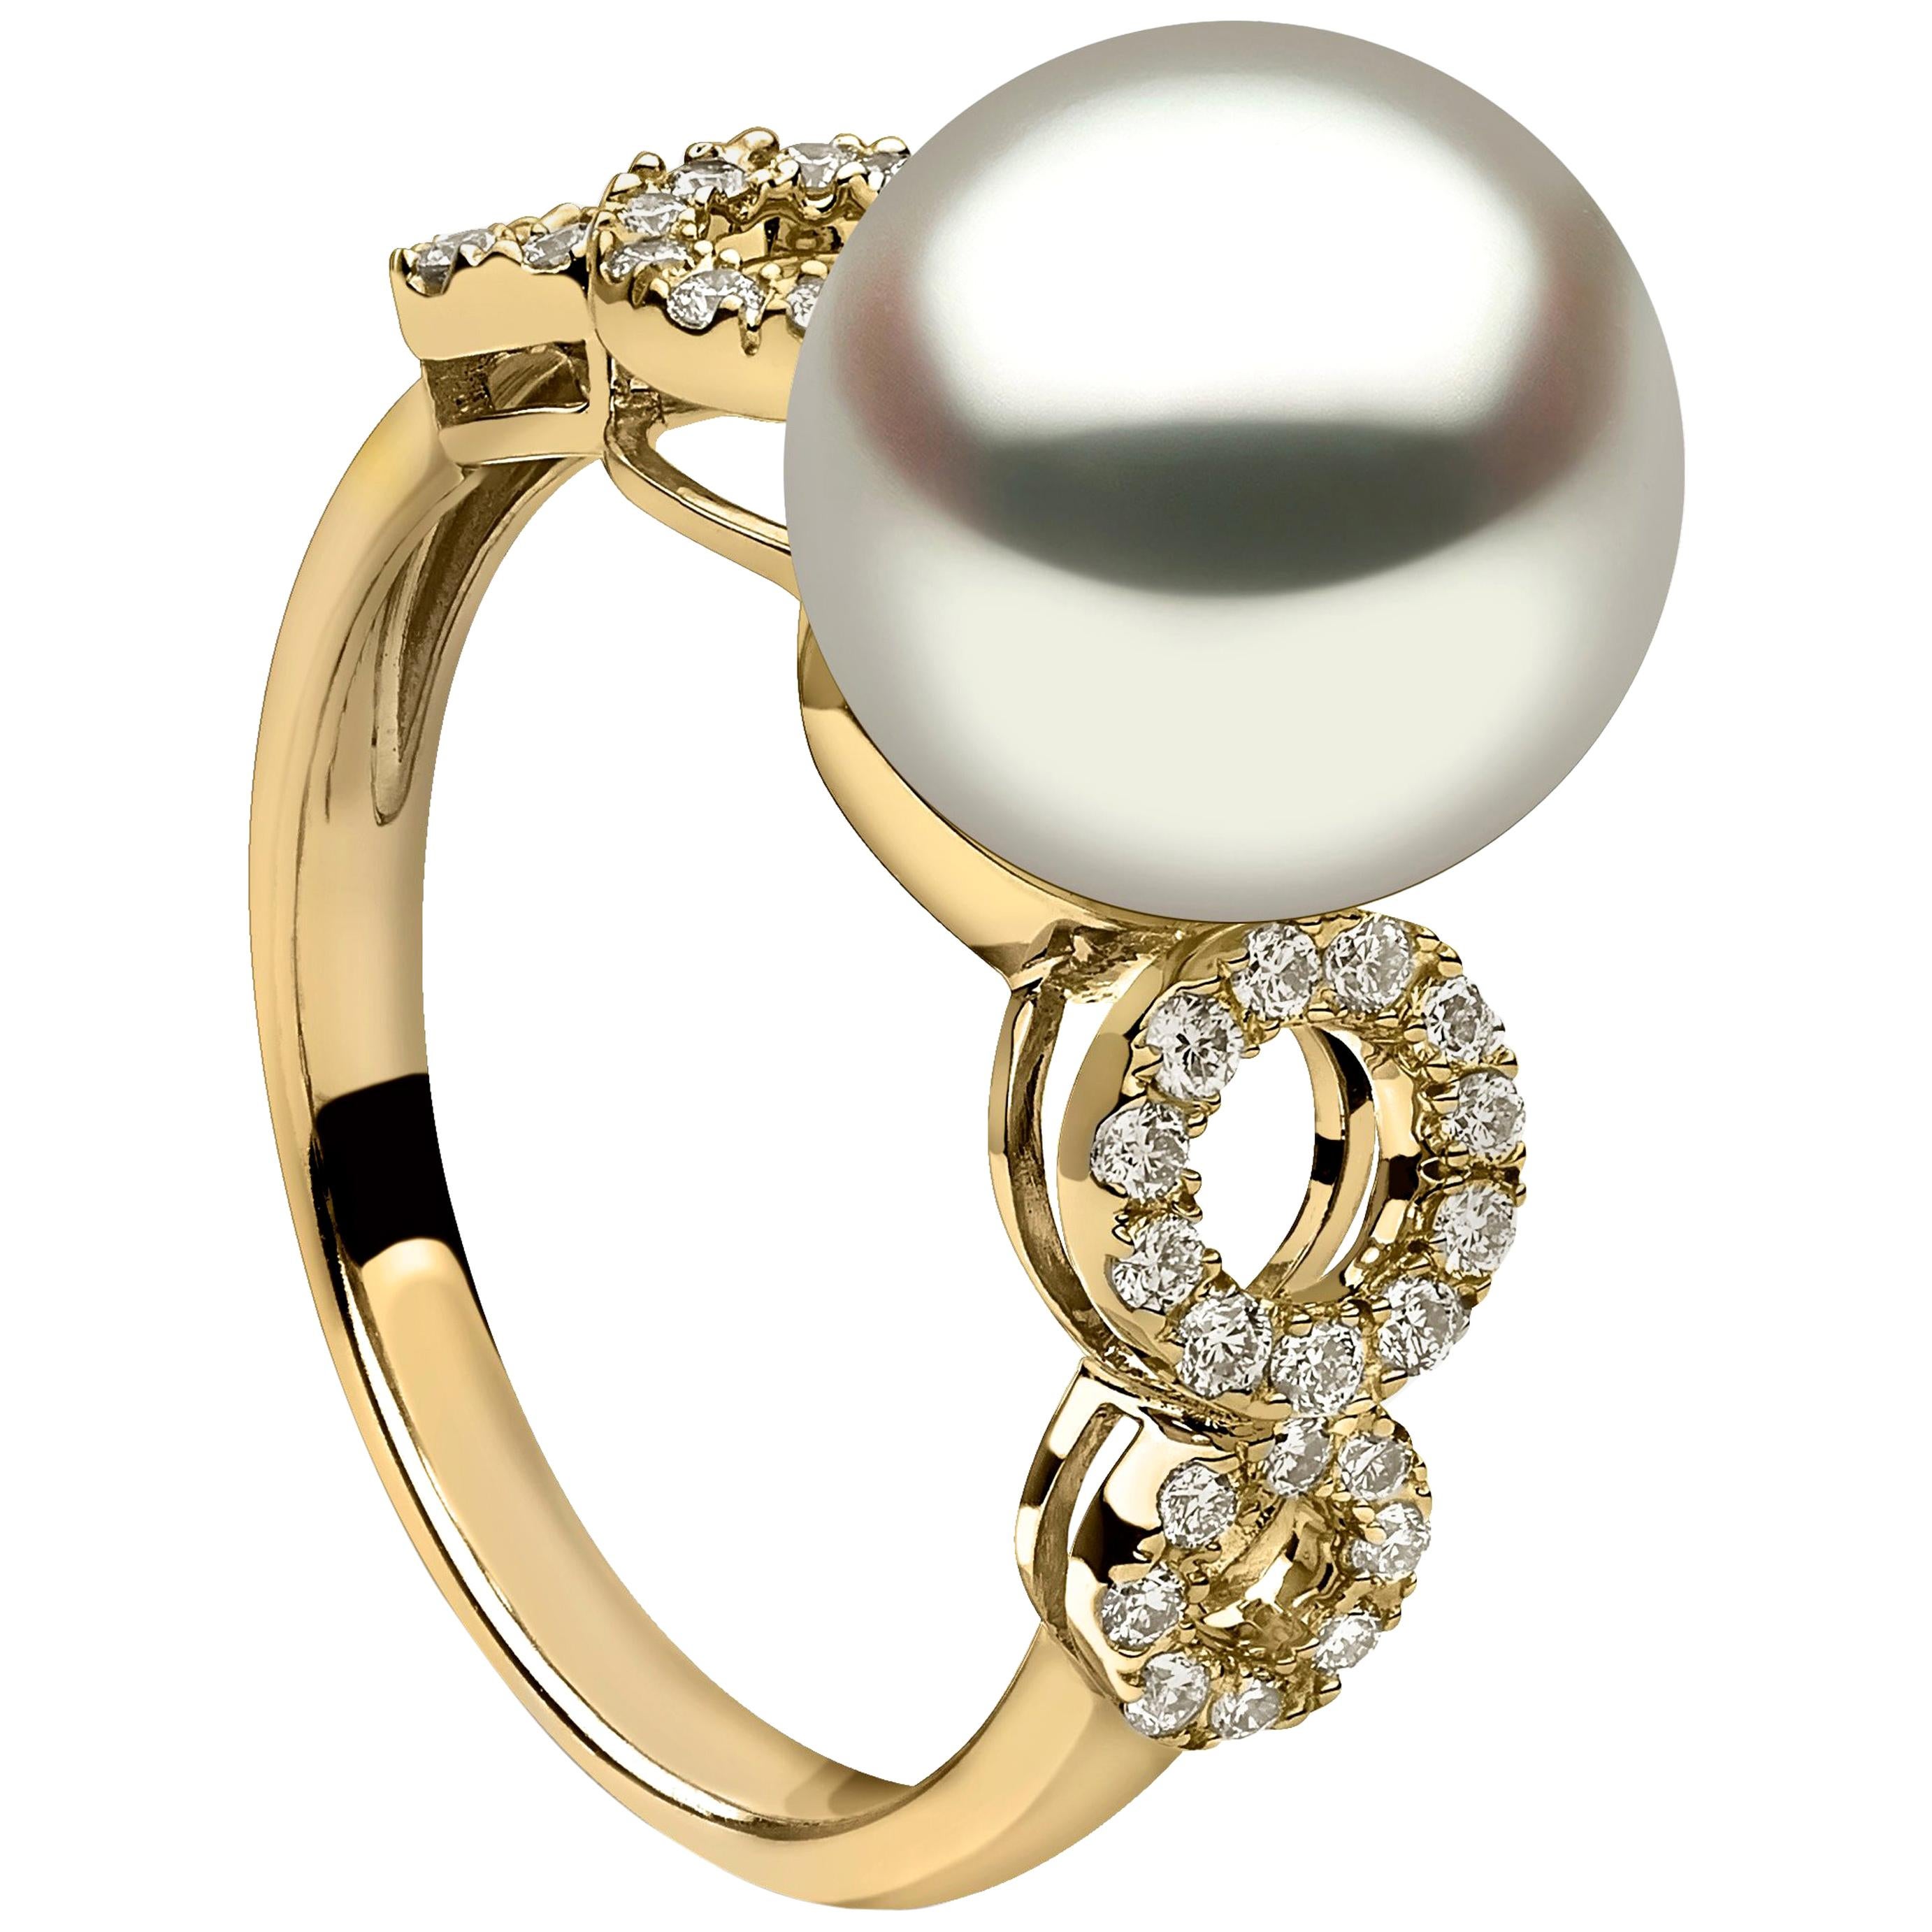 Yoko London Pearl and Diamond Ring in 18 Karat Yellow Gold